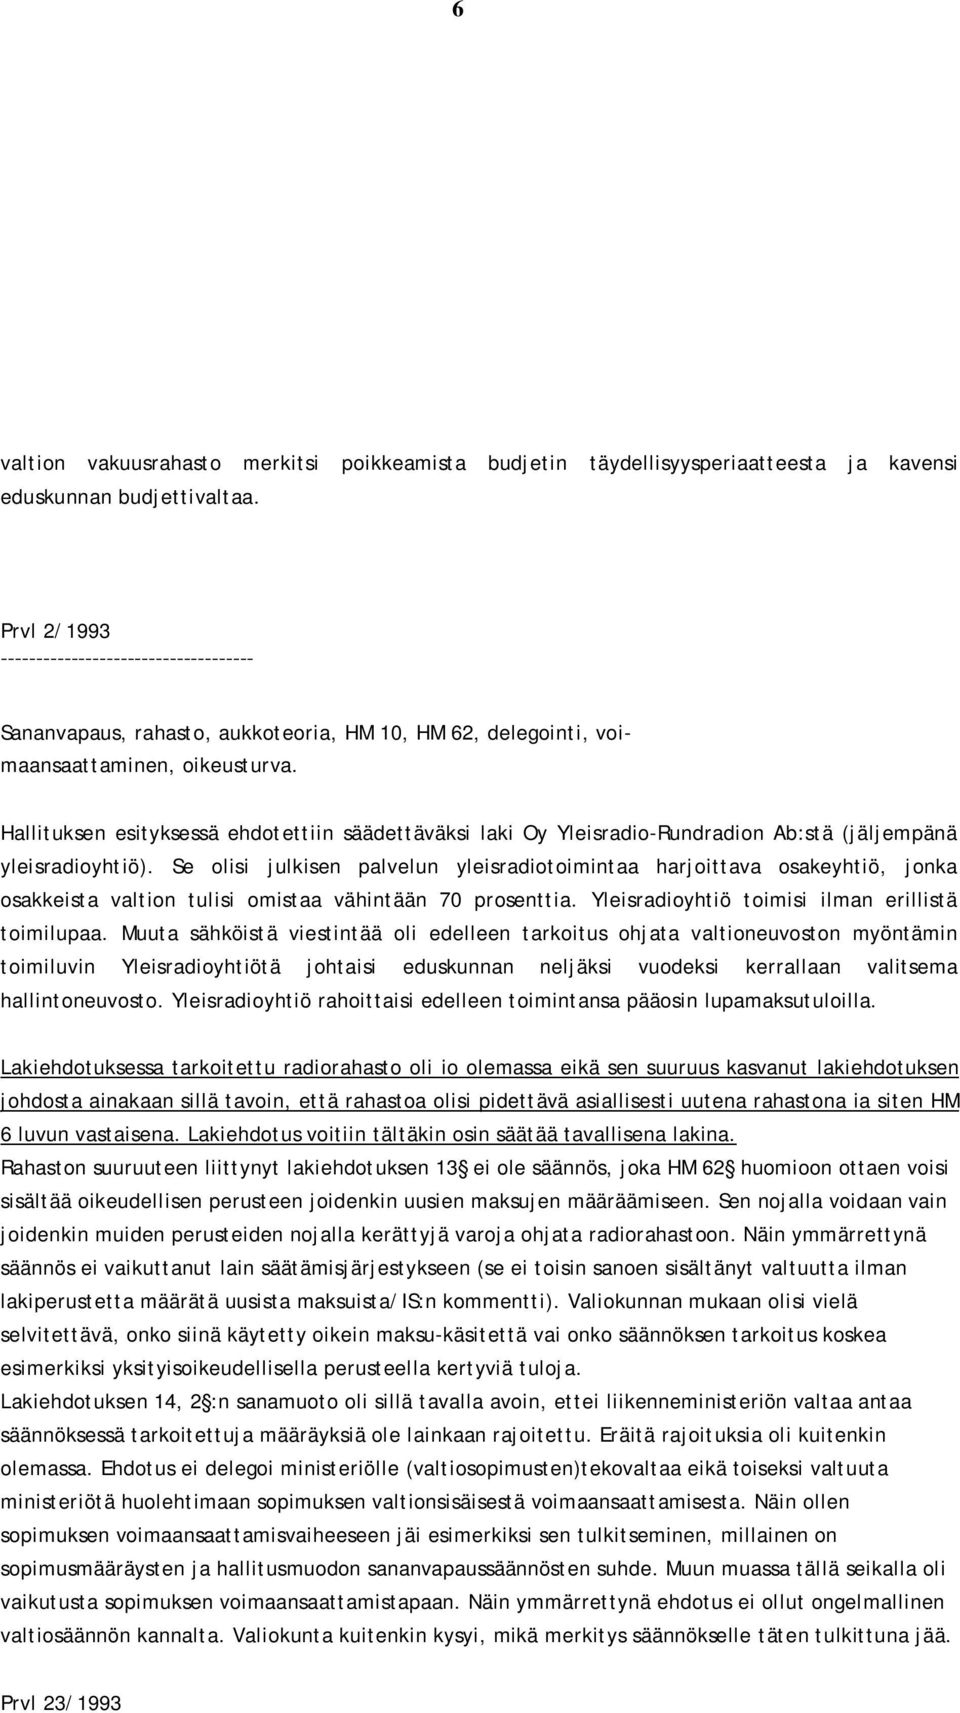 Hallituksen esityksessä ehdotettiin säädettäväksi laki Oy Yleisradio-Rundradion Ab:stä (jäljempänä yleisradioyhtiö).